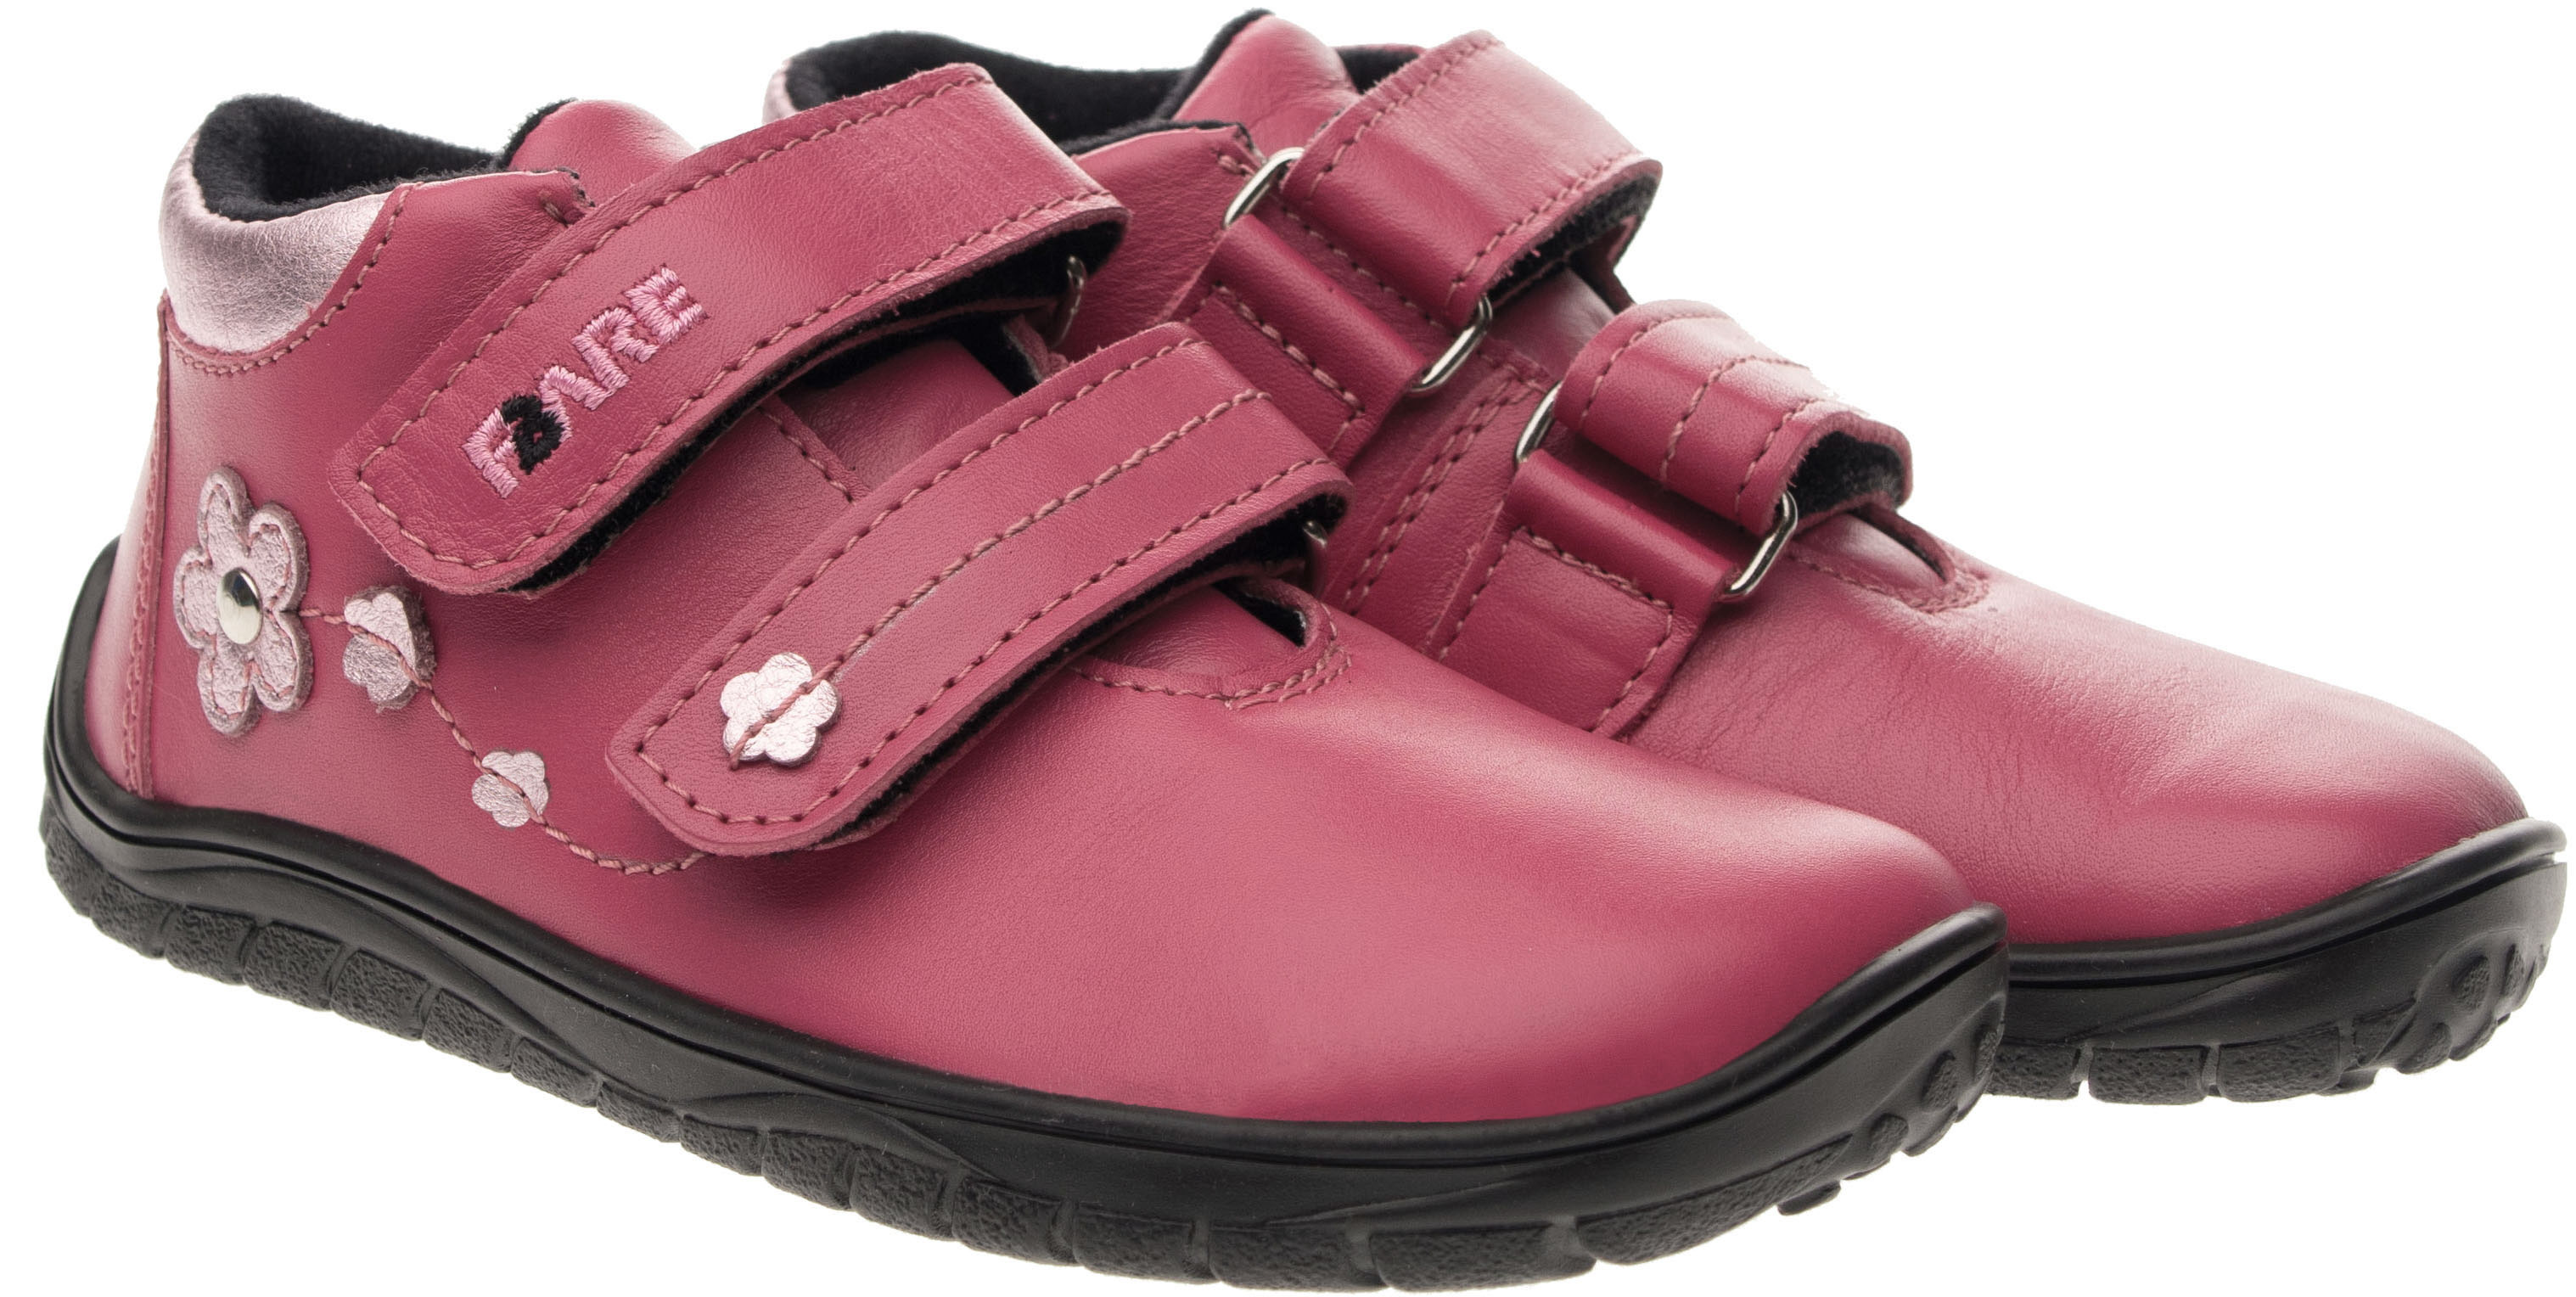 FARE BARE celoroční boty s membránou B5516152 Velikost obuvi: 28